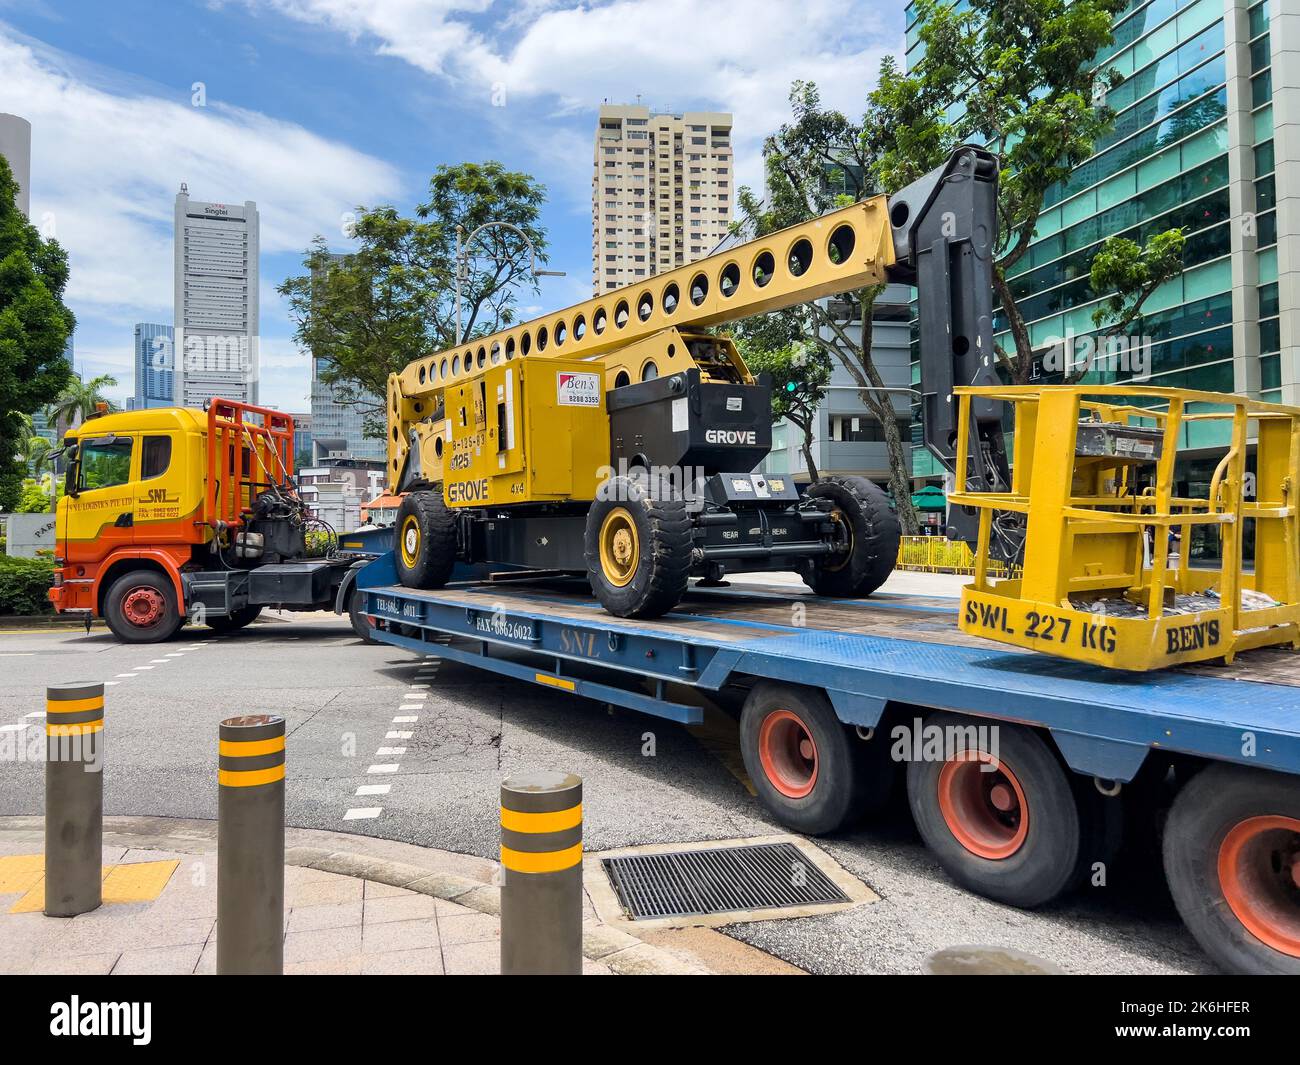 Un immense camion de transport transporte un équipement de levage de rampe sur la route, ce qui se transforme en une petite route difficile avec précaution. Banque D'Images